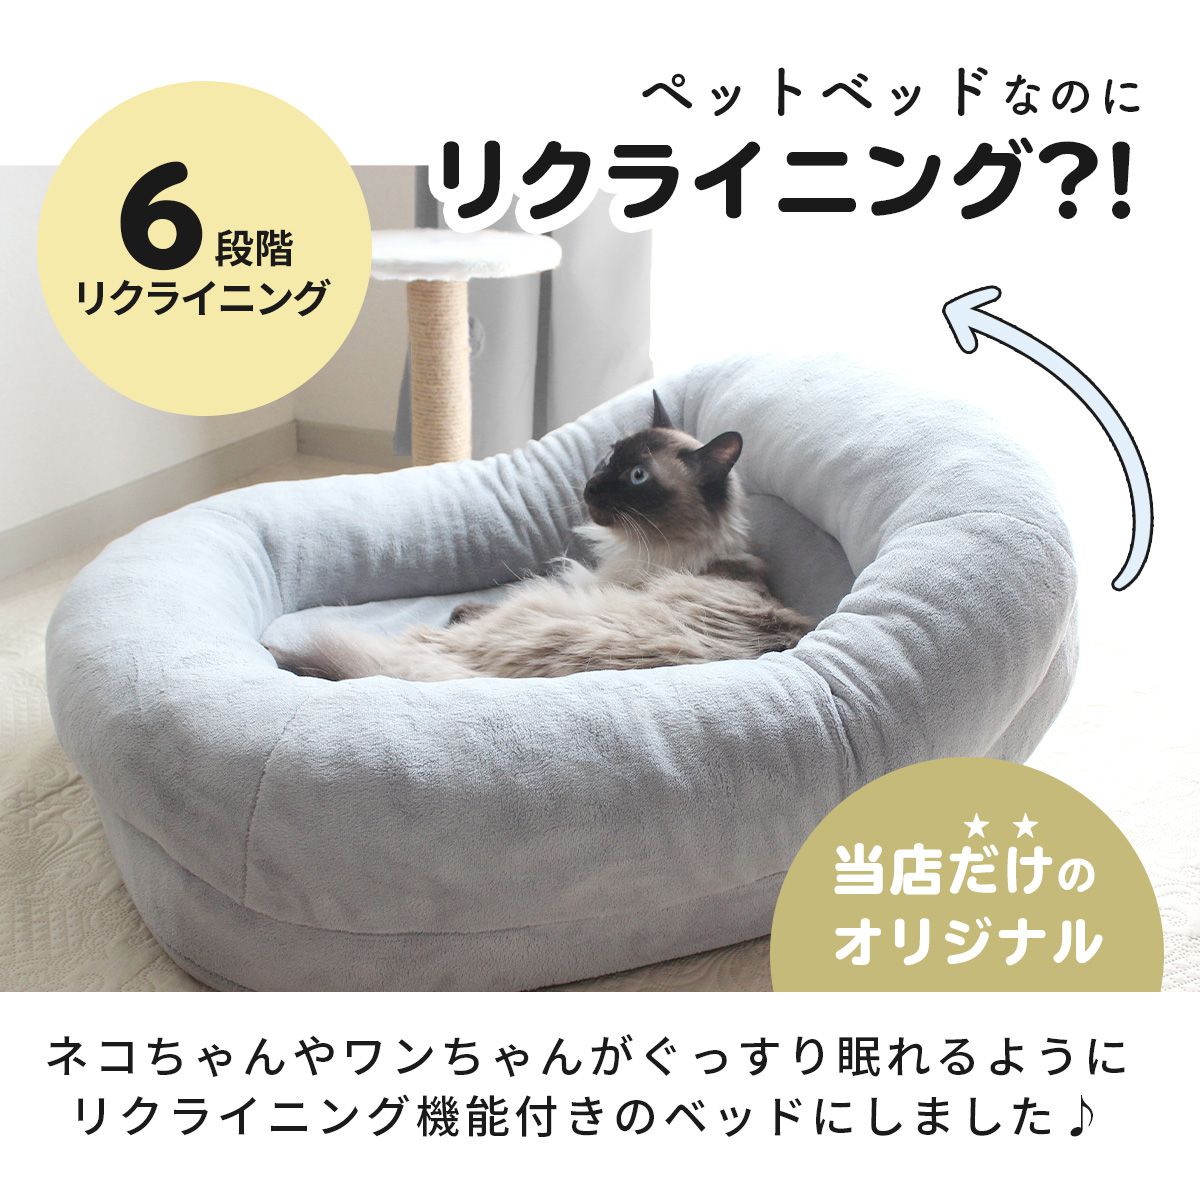 ベッド 猫 犬 ペットベッド クッション ラウンド ワイドサイズ 幅60cm テマ